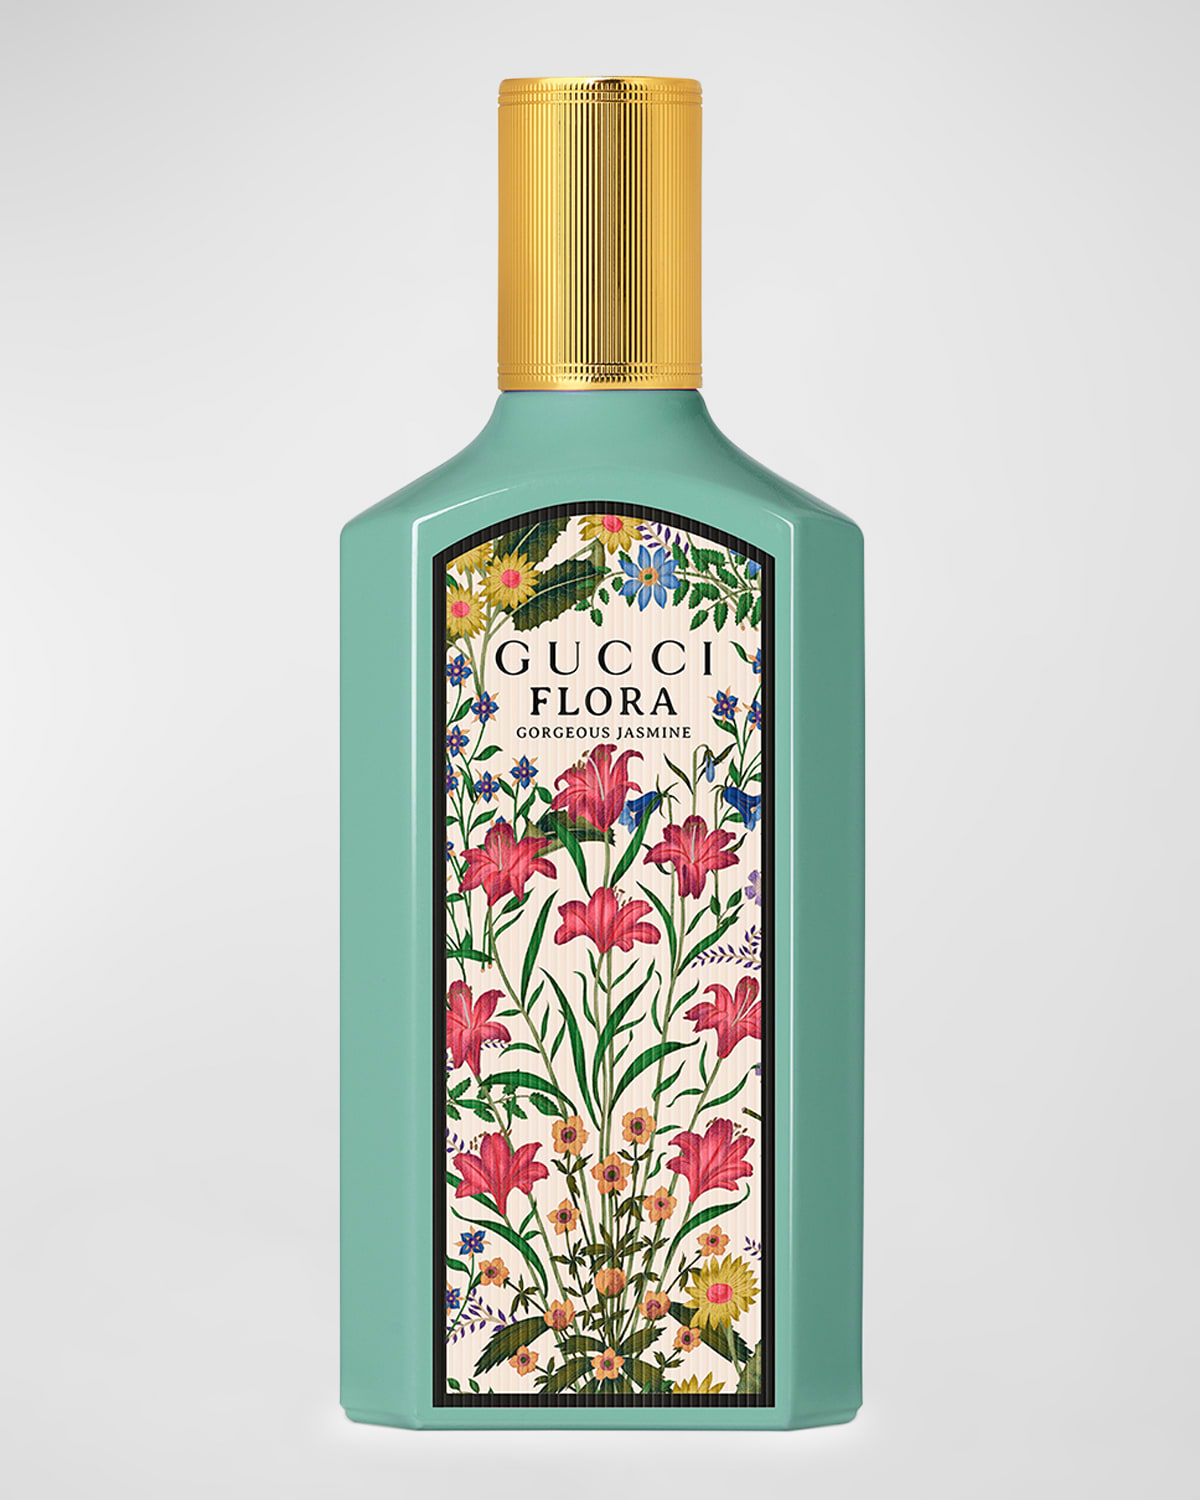 Flora Gorgeous Jasmine Eau de Parfum, 5 oz.